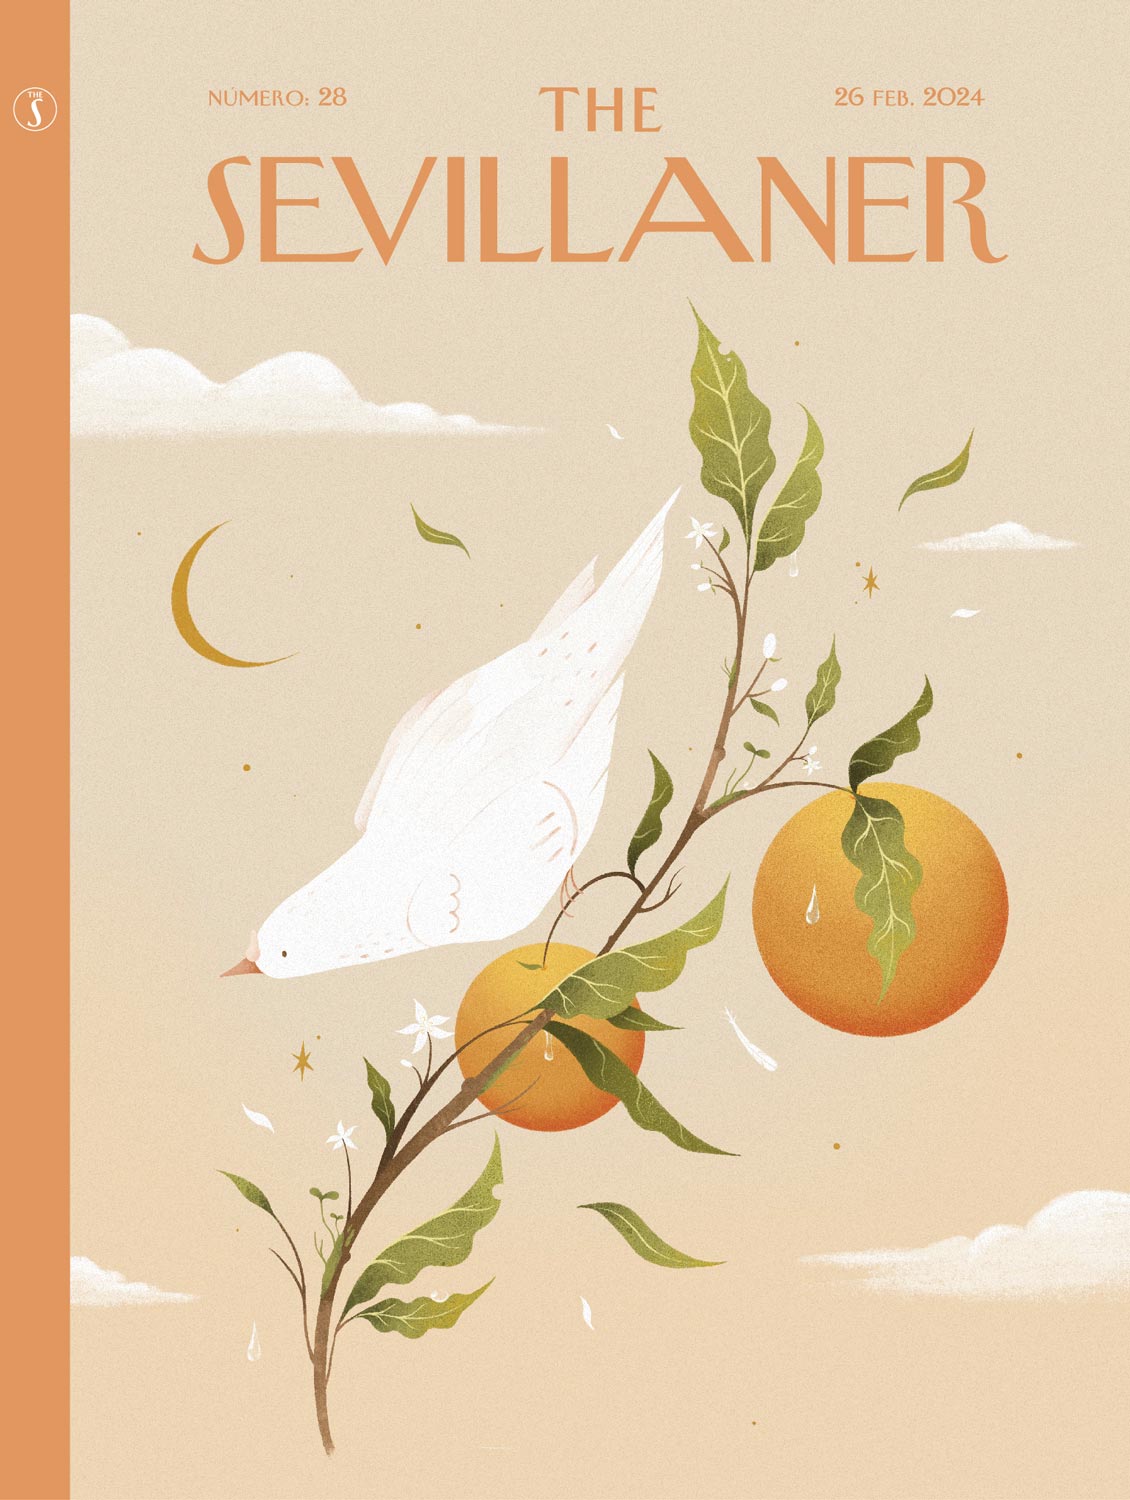 The Sevillaner